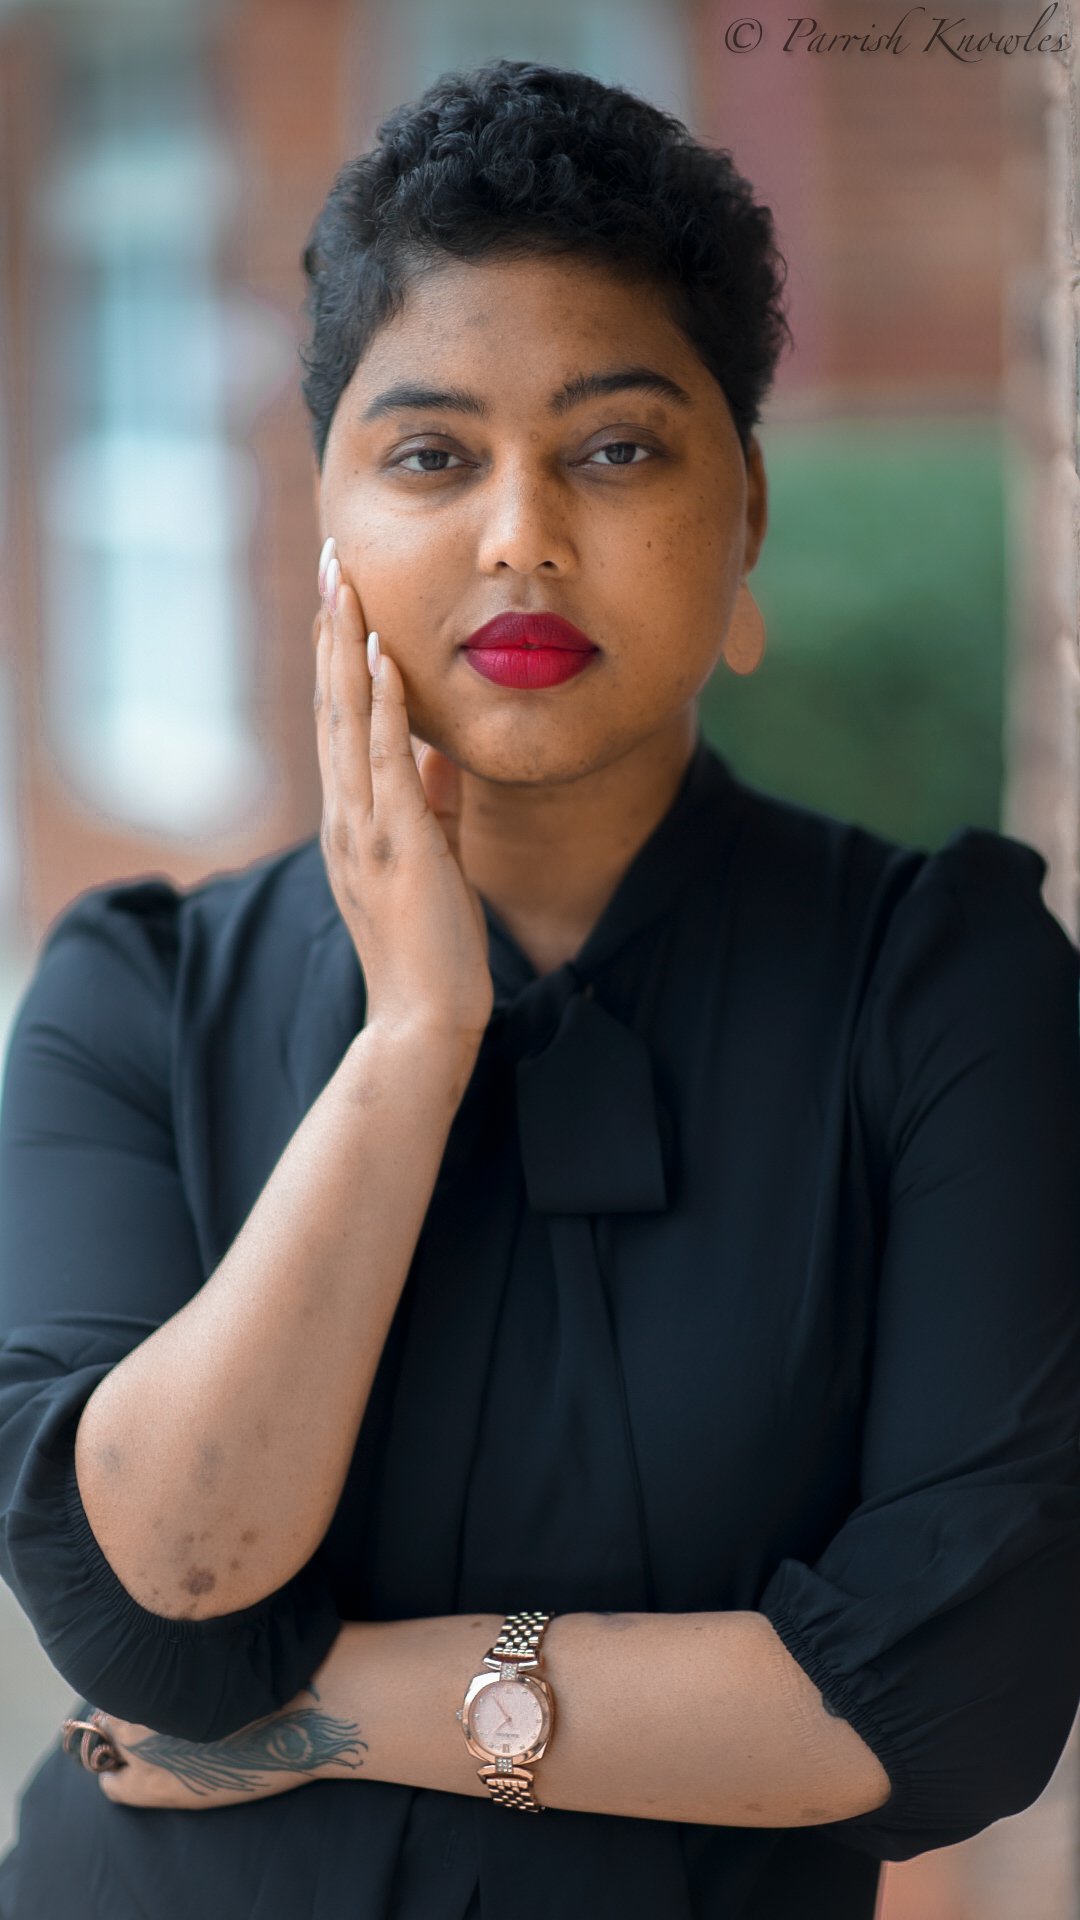 Tifara Knowles, spoken word artist